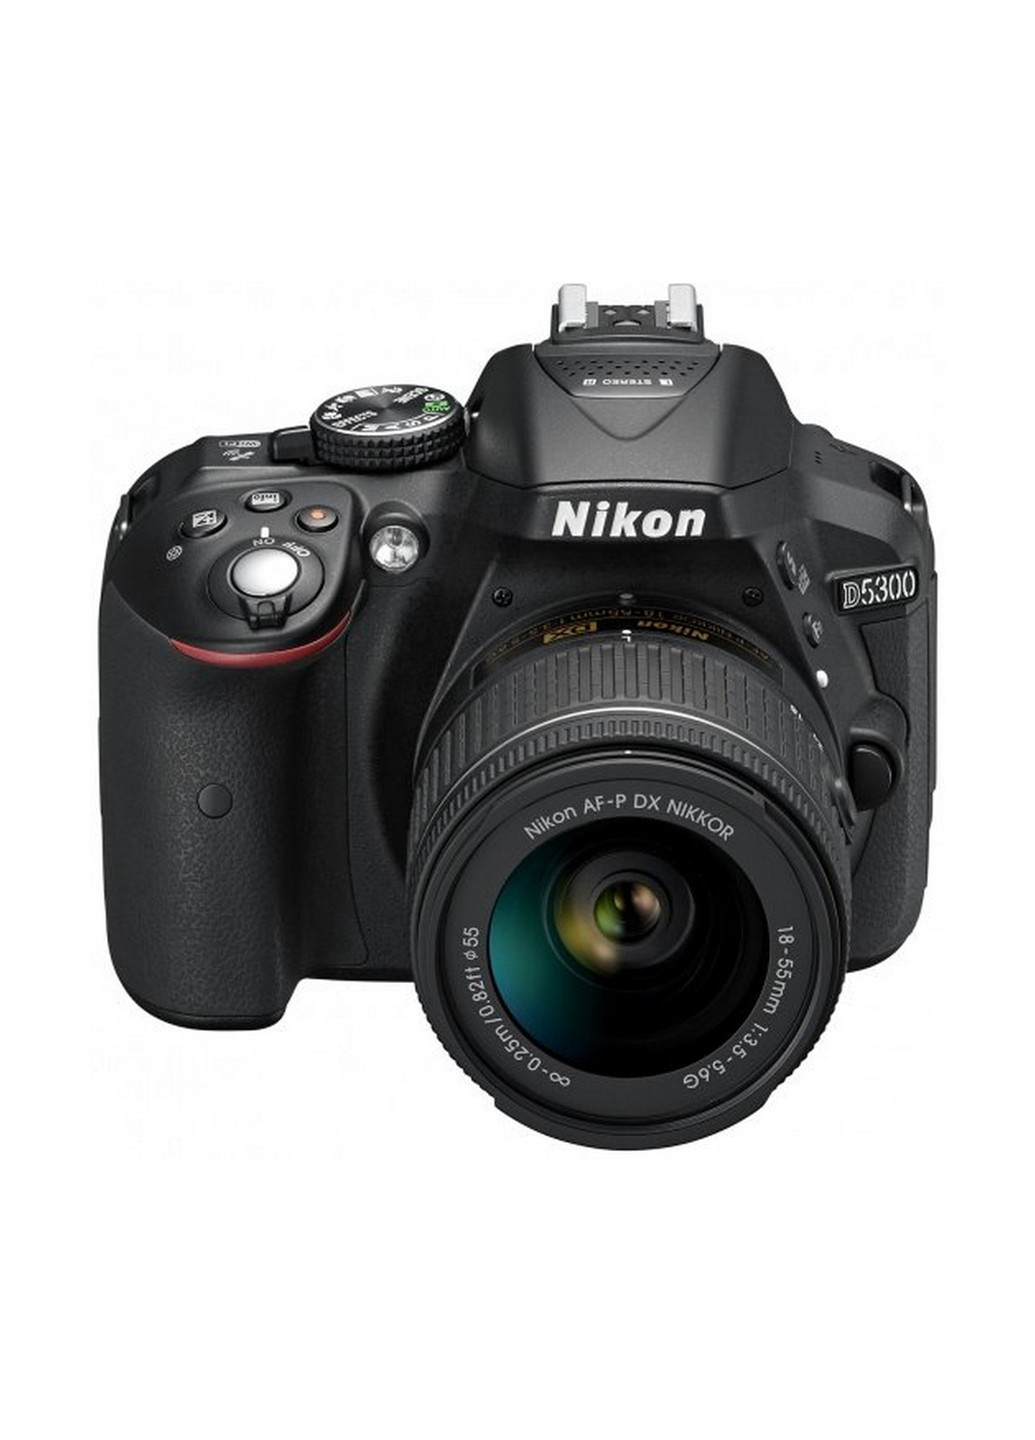 Зеркальная фотокамера Nikon d5300 + af-p 18-55 non-vr kit (131792233)